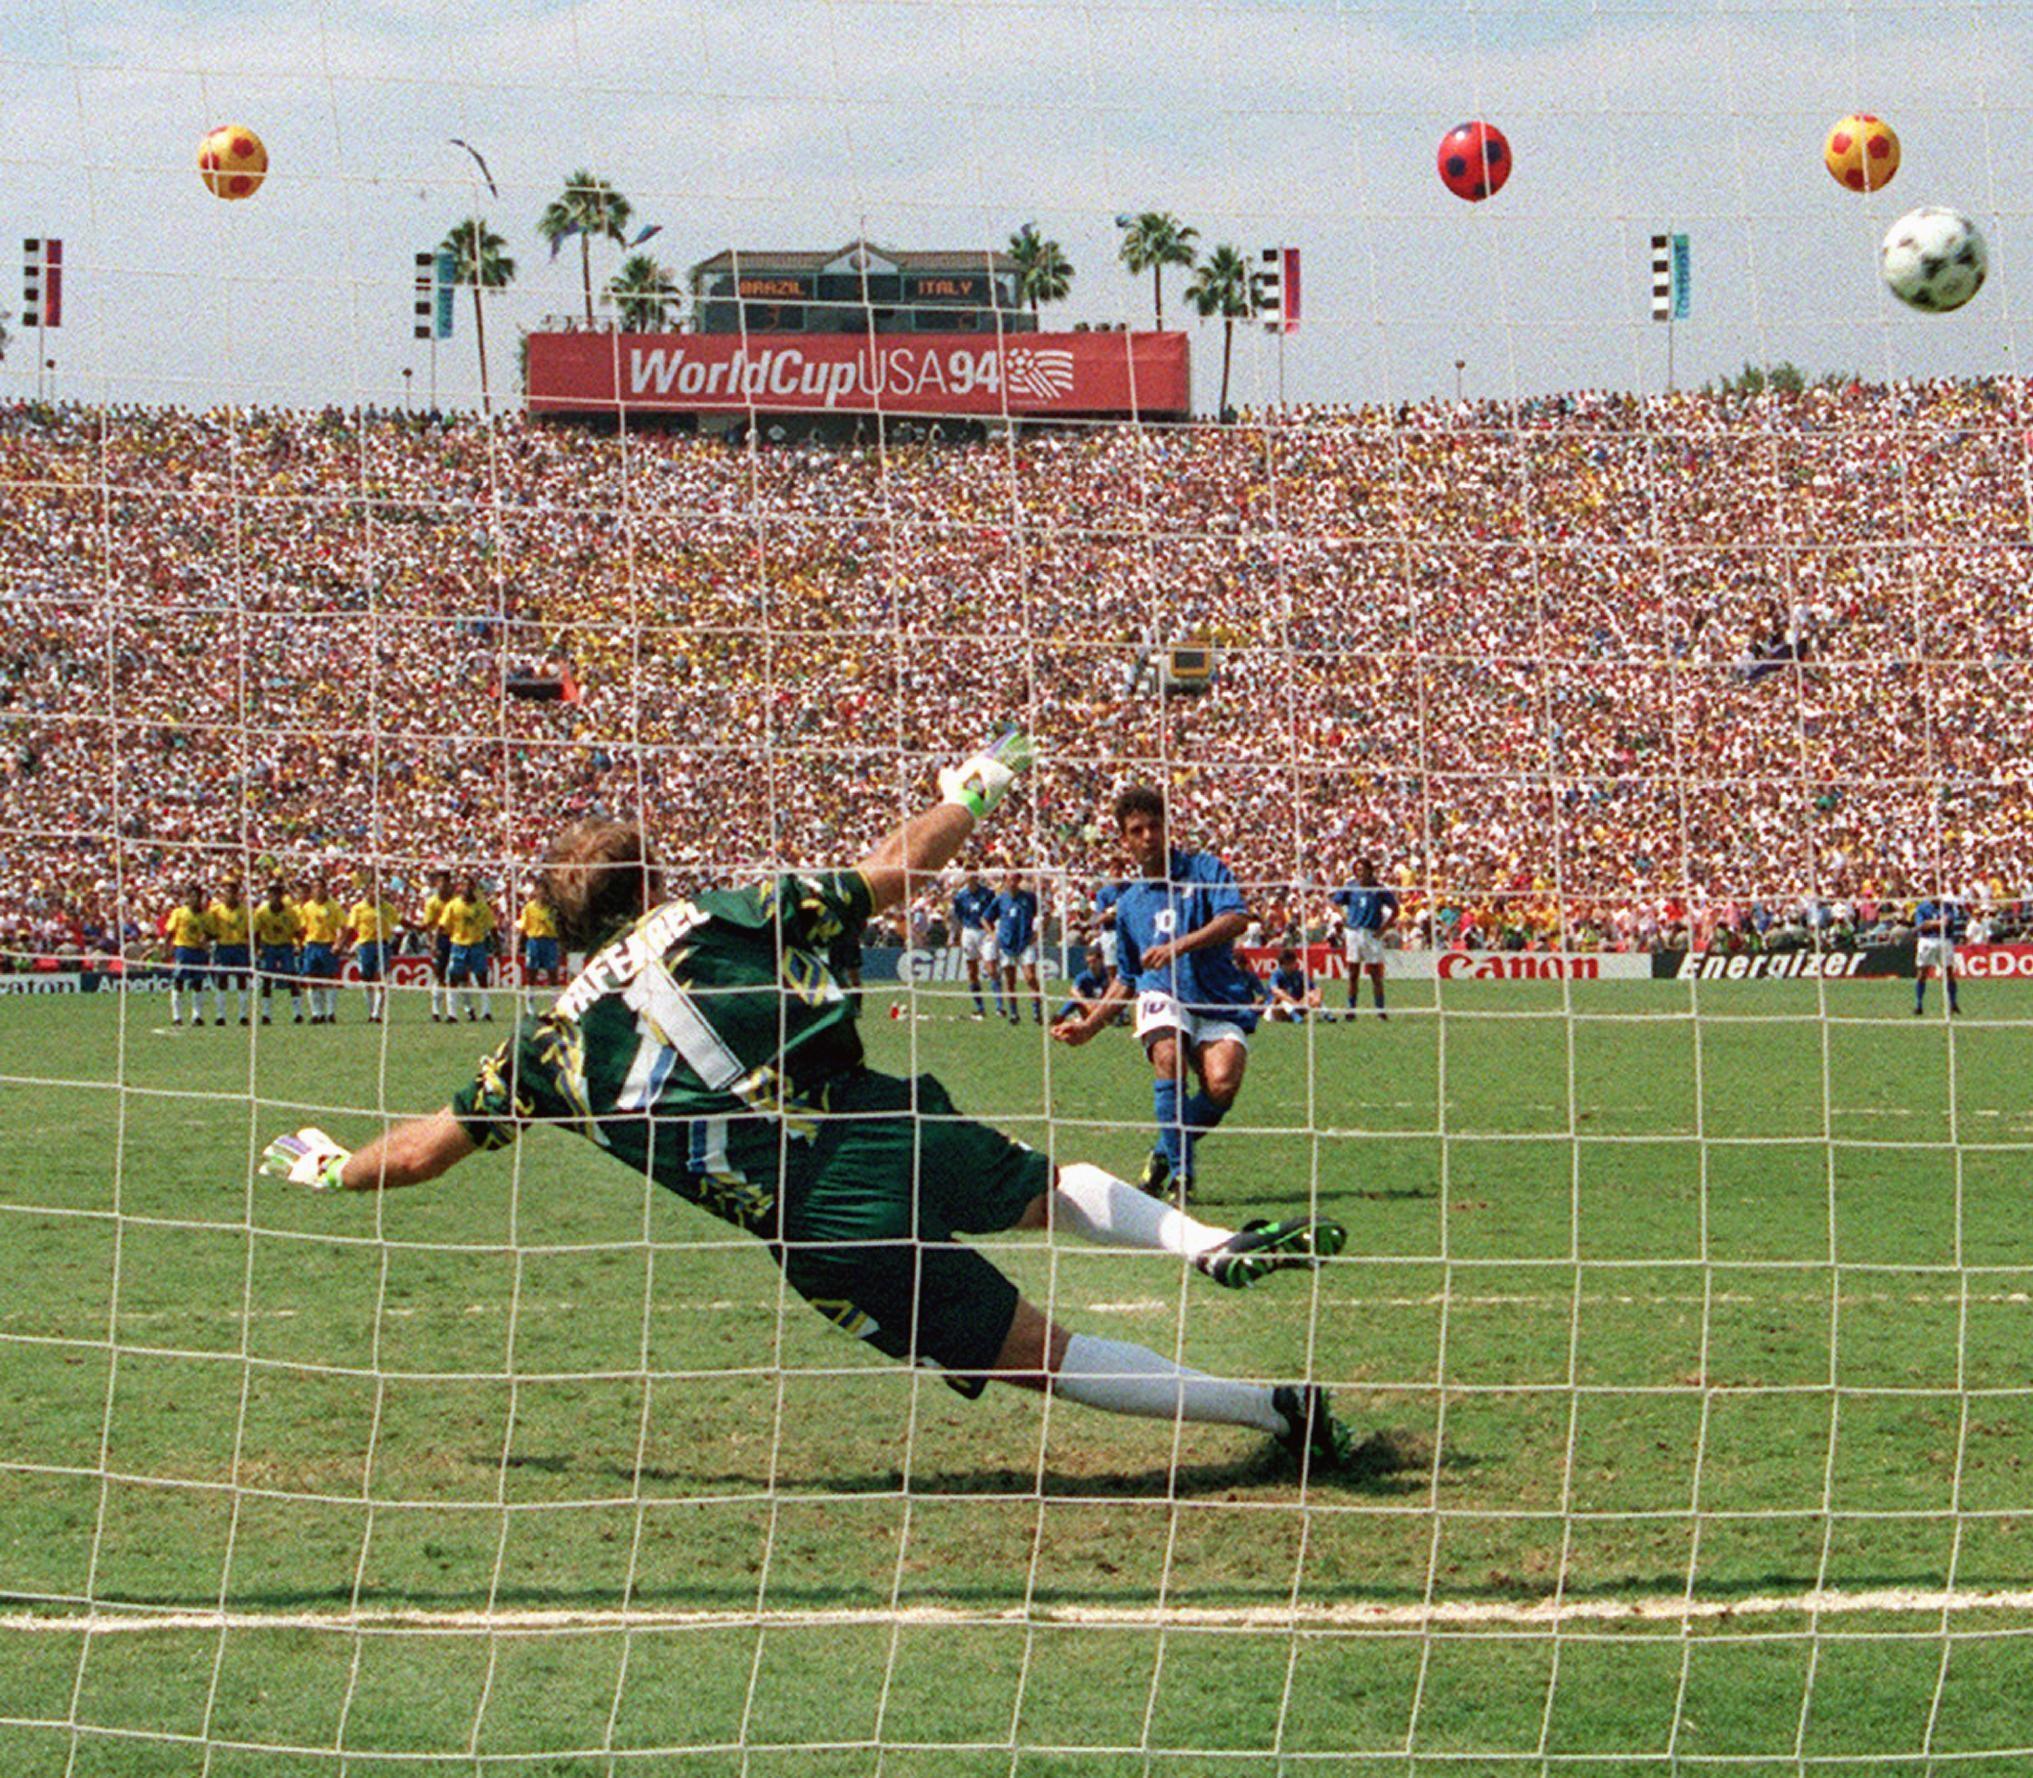 Questra был мячом, предназначенным для чемпионата мира 1994 года в США